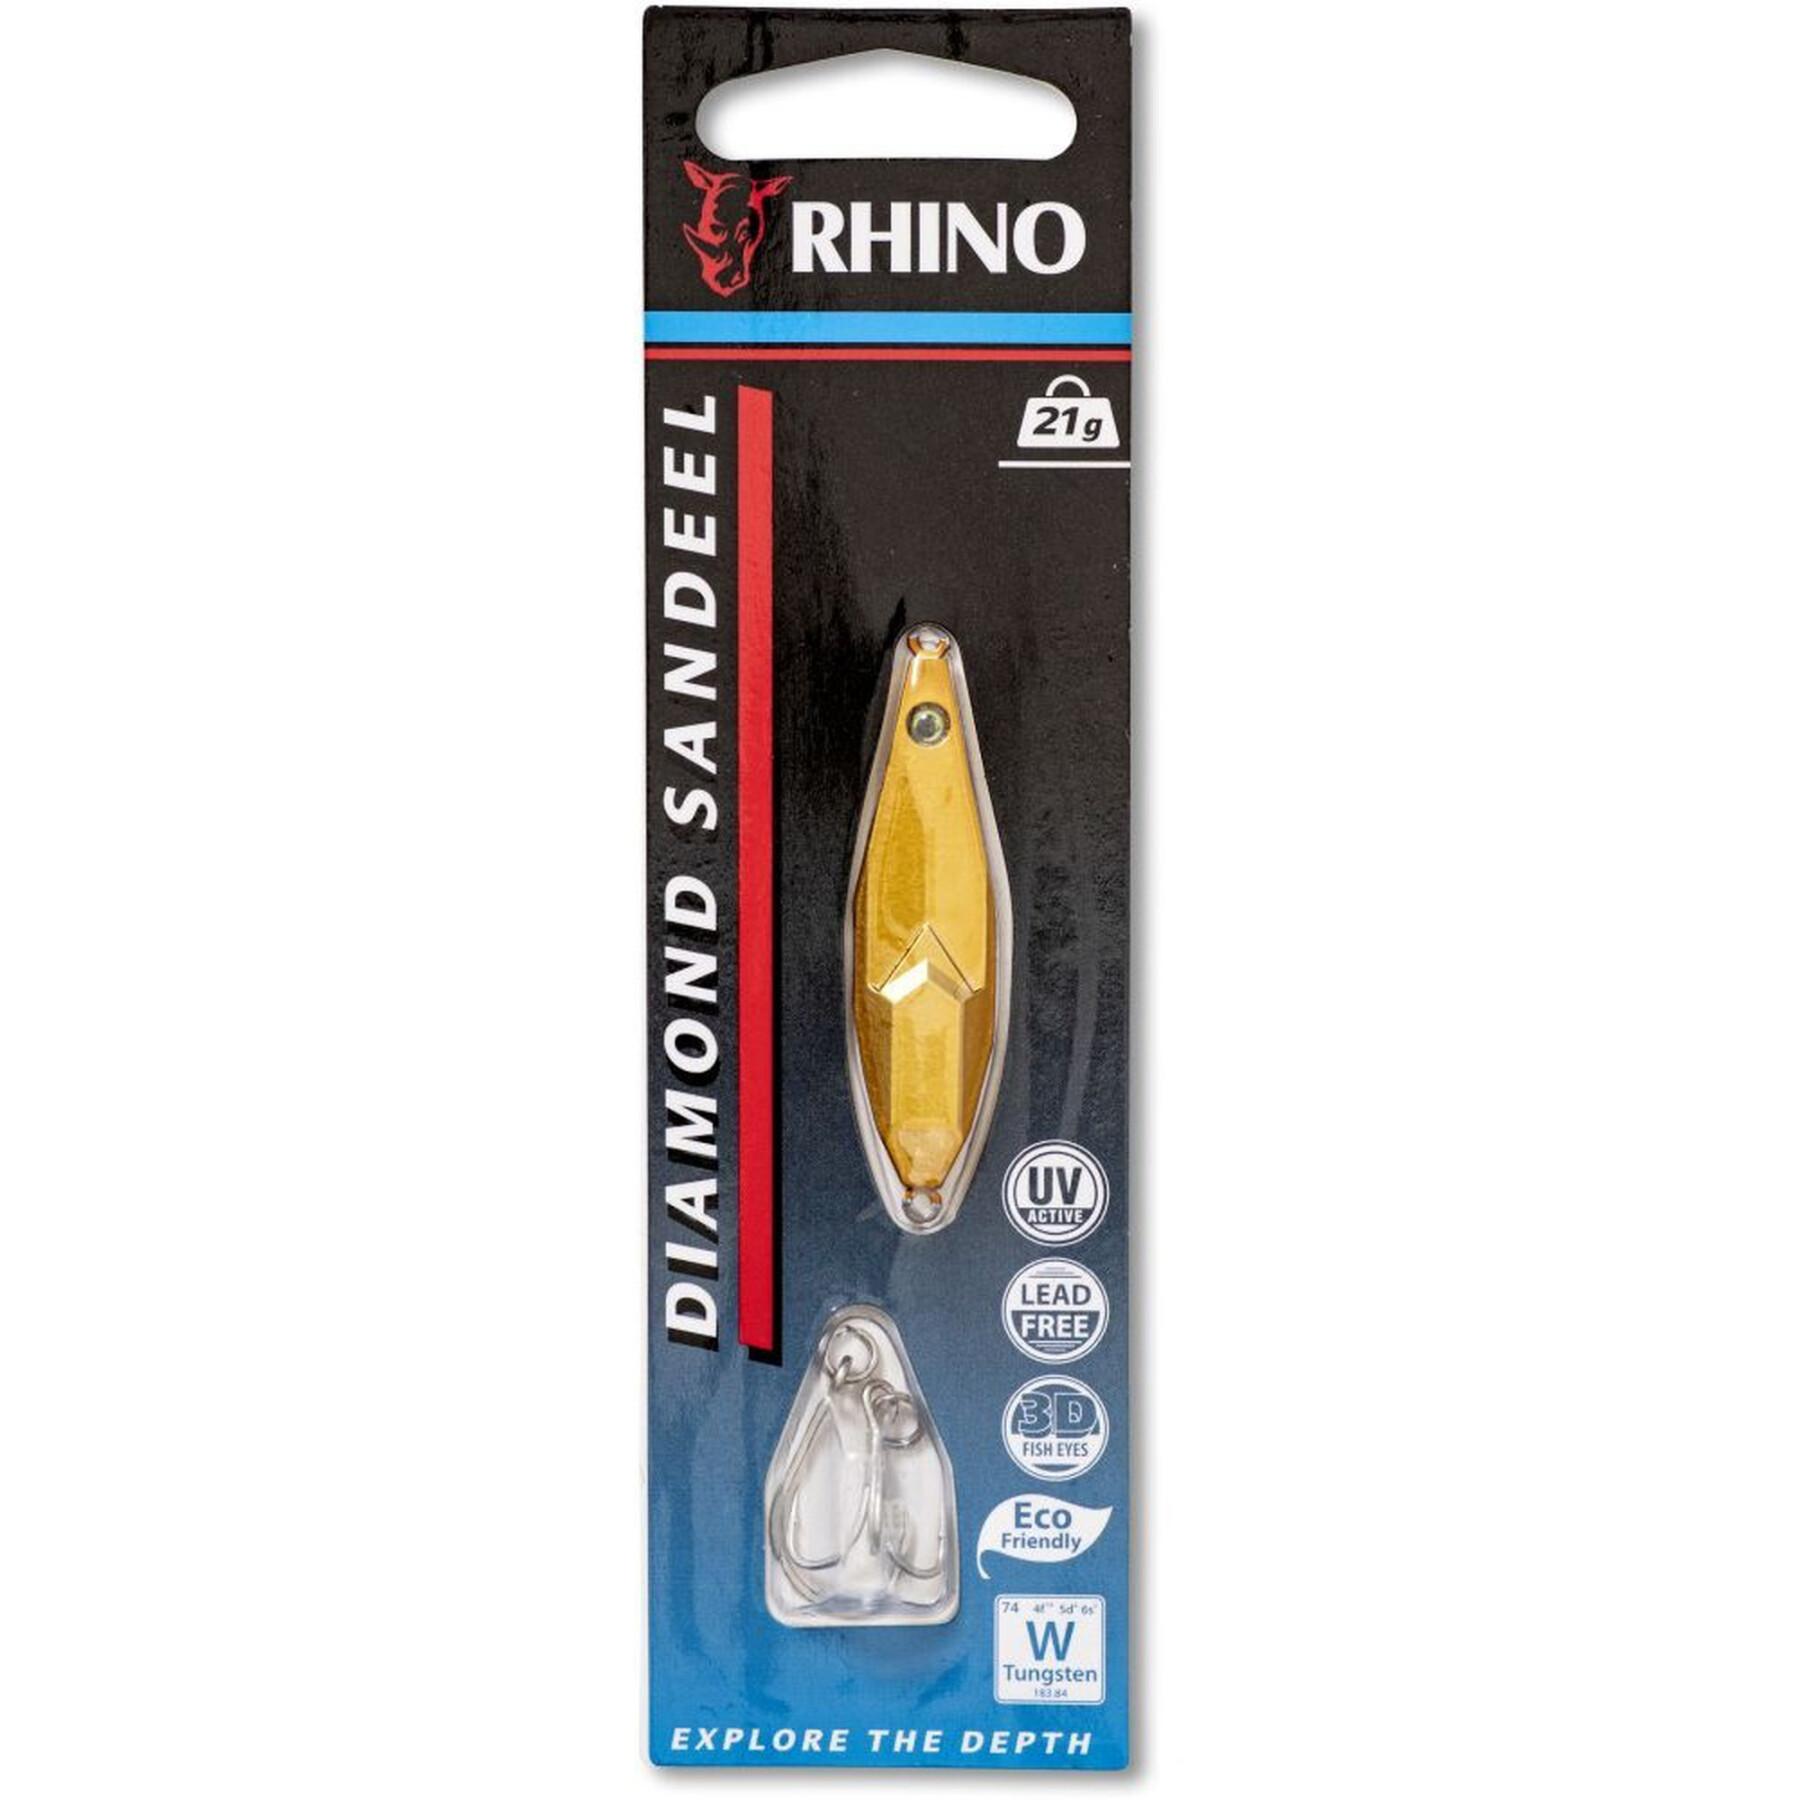 Köder Rhino Diamond Sandeel – 21g